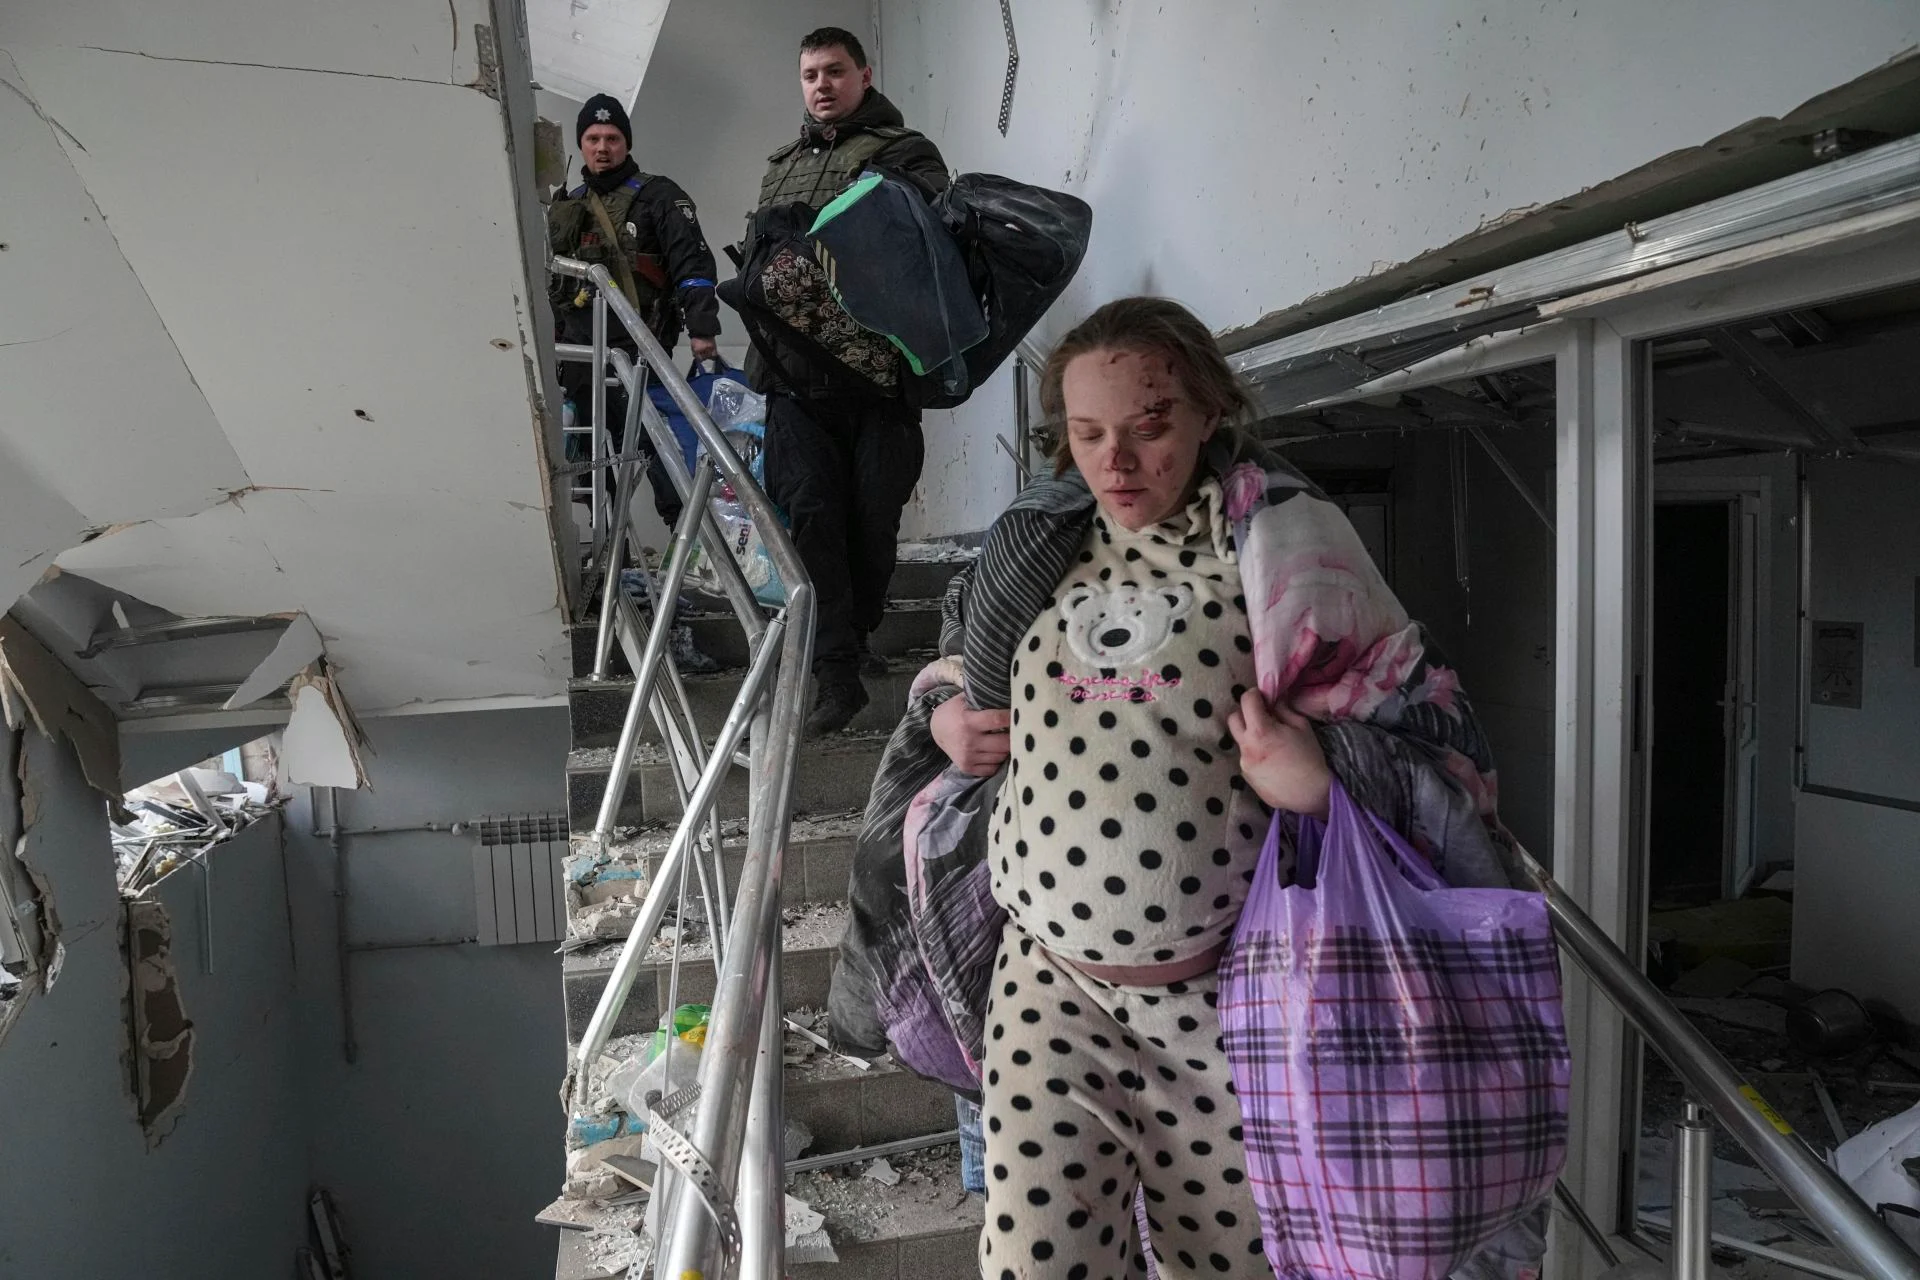 Ουκρανία: ο βομβαρδισμός στο μαιευτήριο και τα 67 νεκρά παιδιά από τον πόλεμο